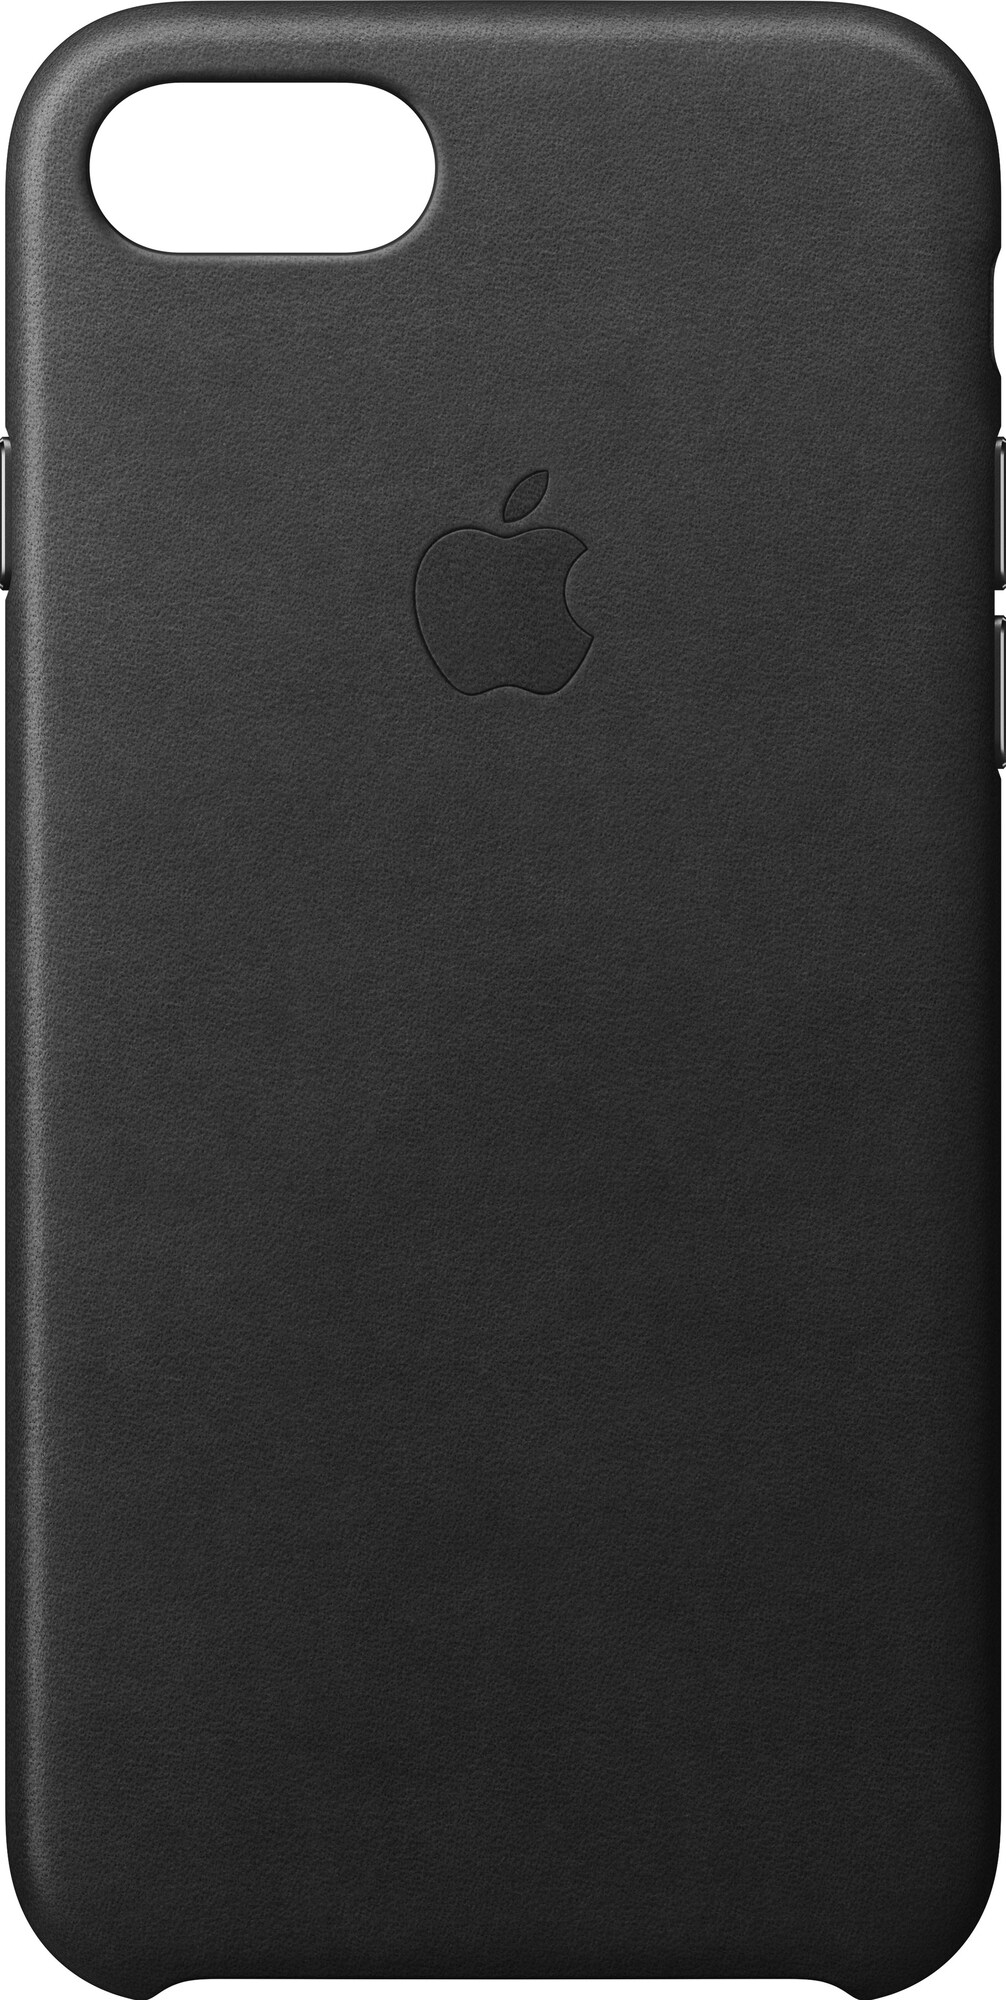 Apple iPhone 7 læderetui - sort | Elgiganten